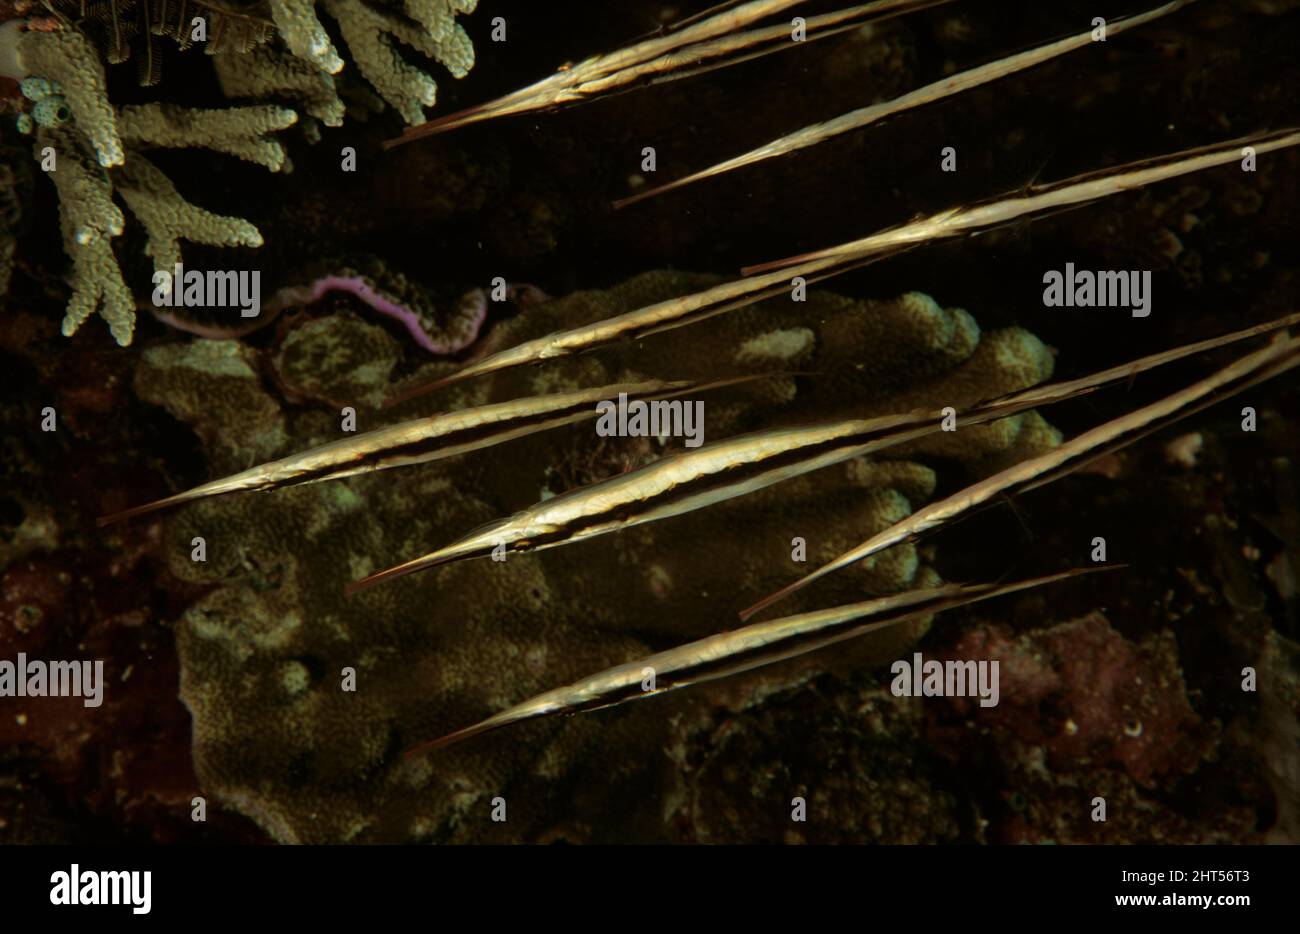 Razorfish (Aeoliscus strigatus), gewöhnlich senkrecht, Nase nach unten, in einer synchronisierten Gruppe schwimmen. Etwa 15 cm lang. Dies ist ein VERTIKALES Bild. Stockfoto